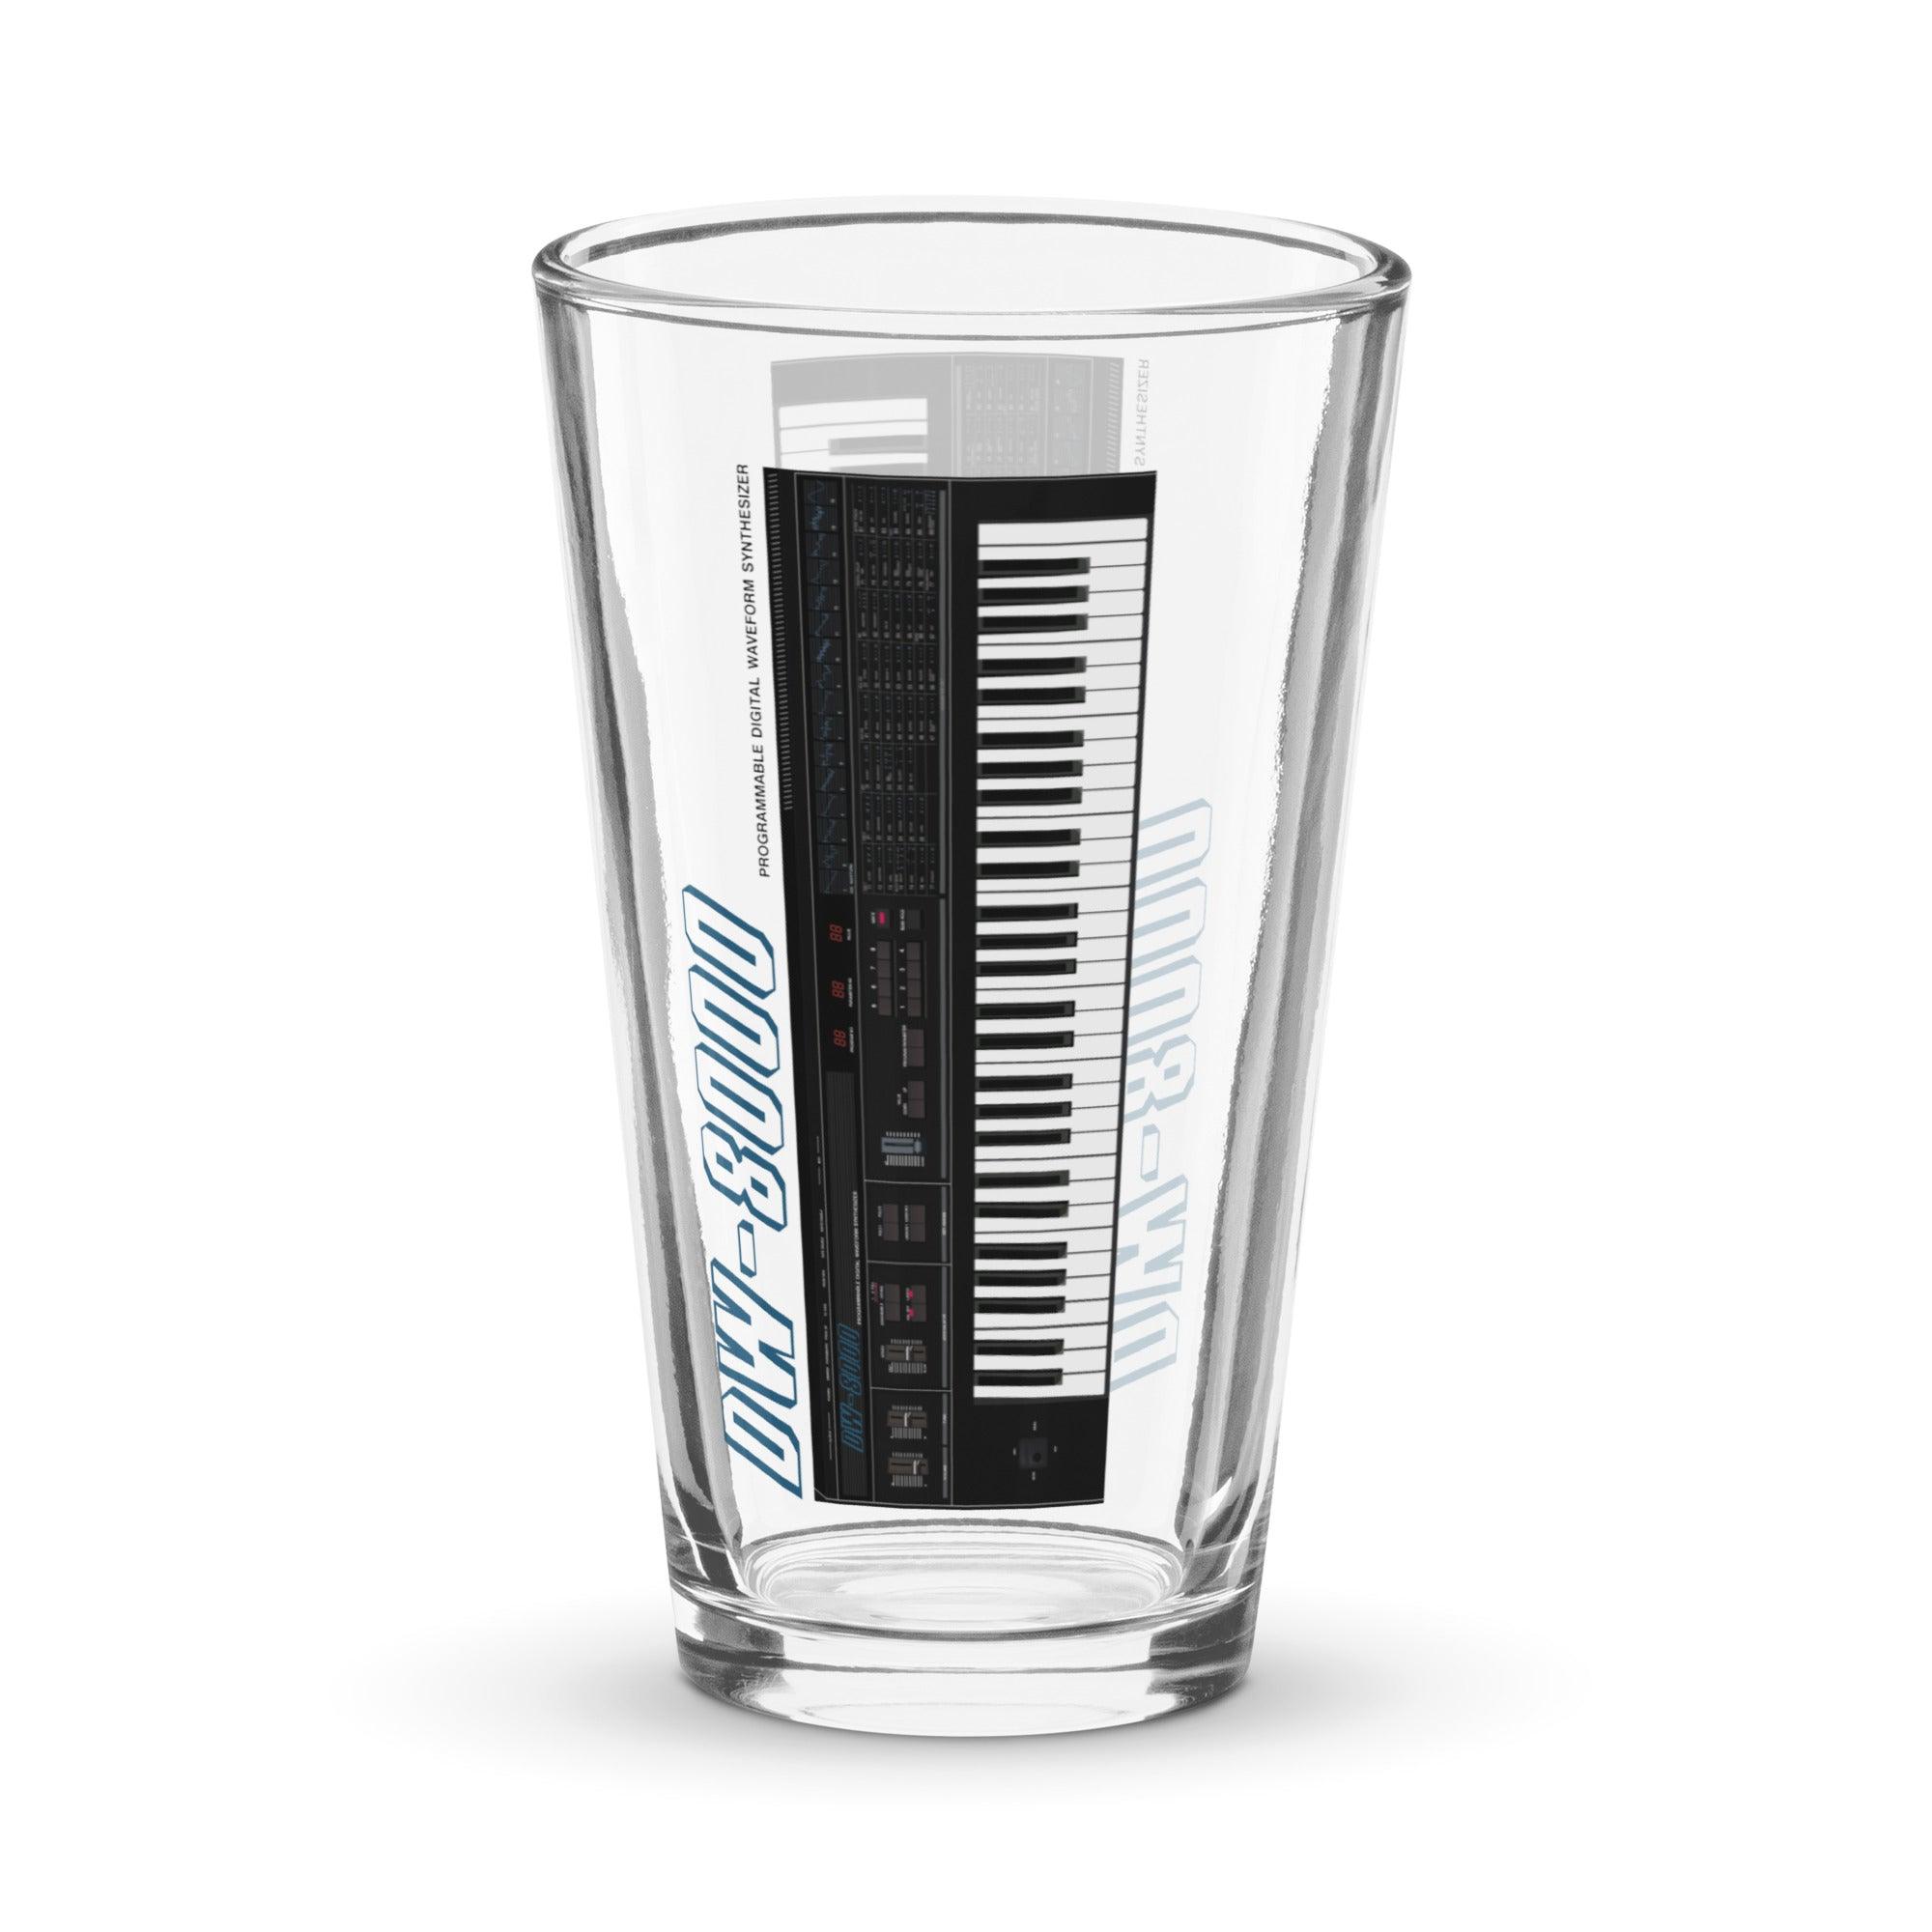 Korg DW-8000 Keyboard Artist Rendition Shaker Pint Glass (16 oz.) - Tedeschi Studio, LLC.